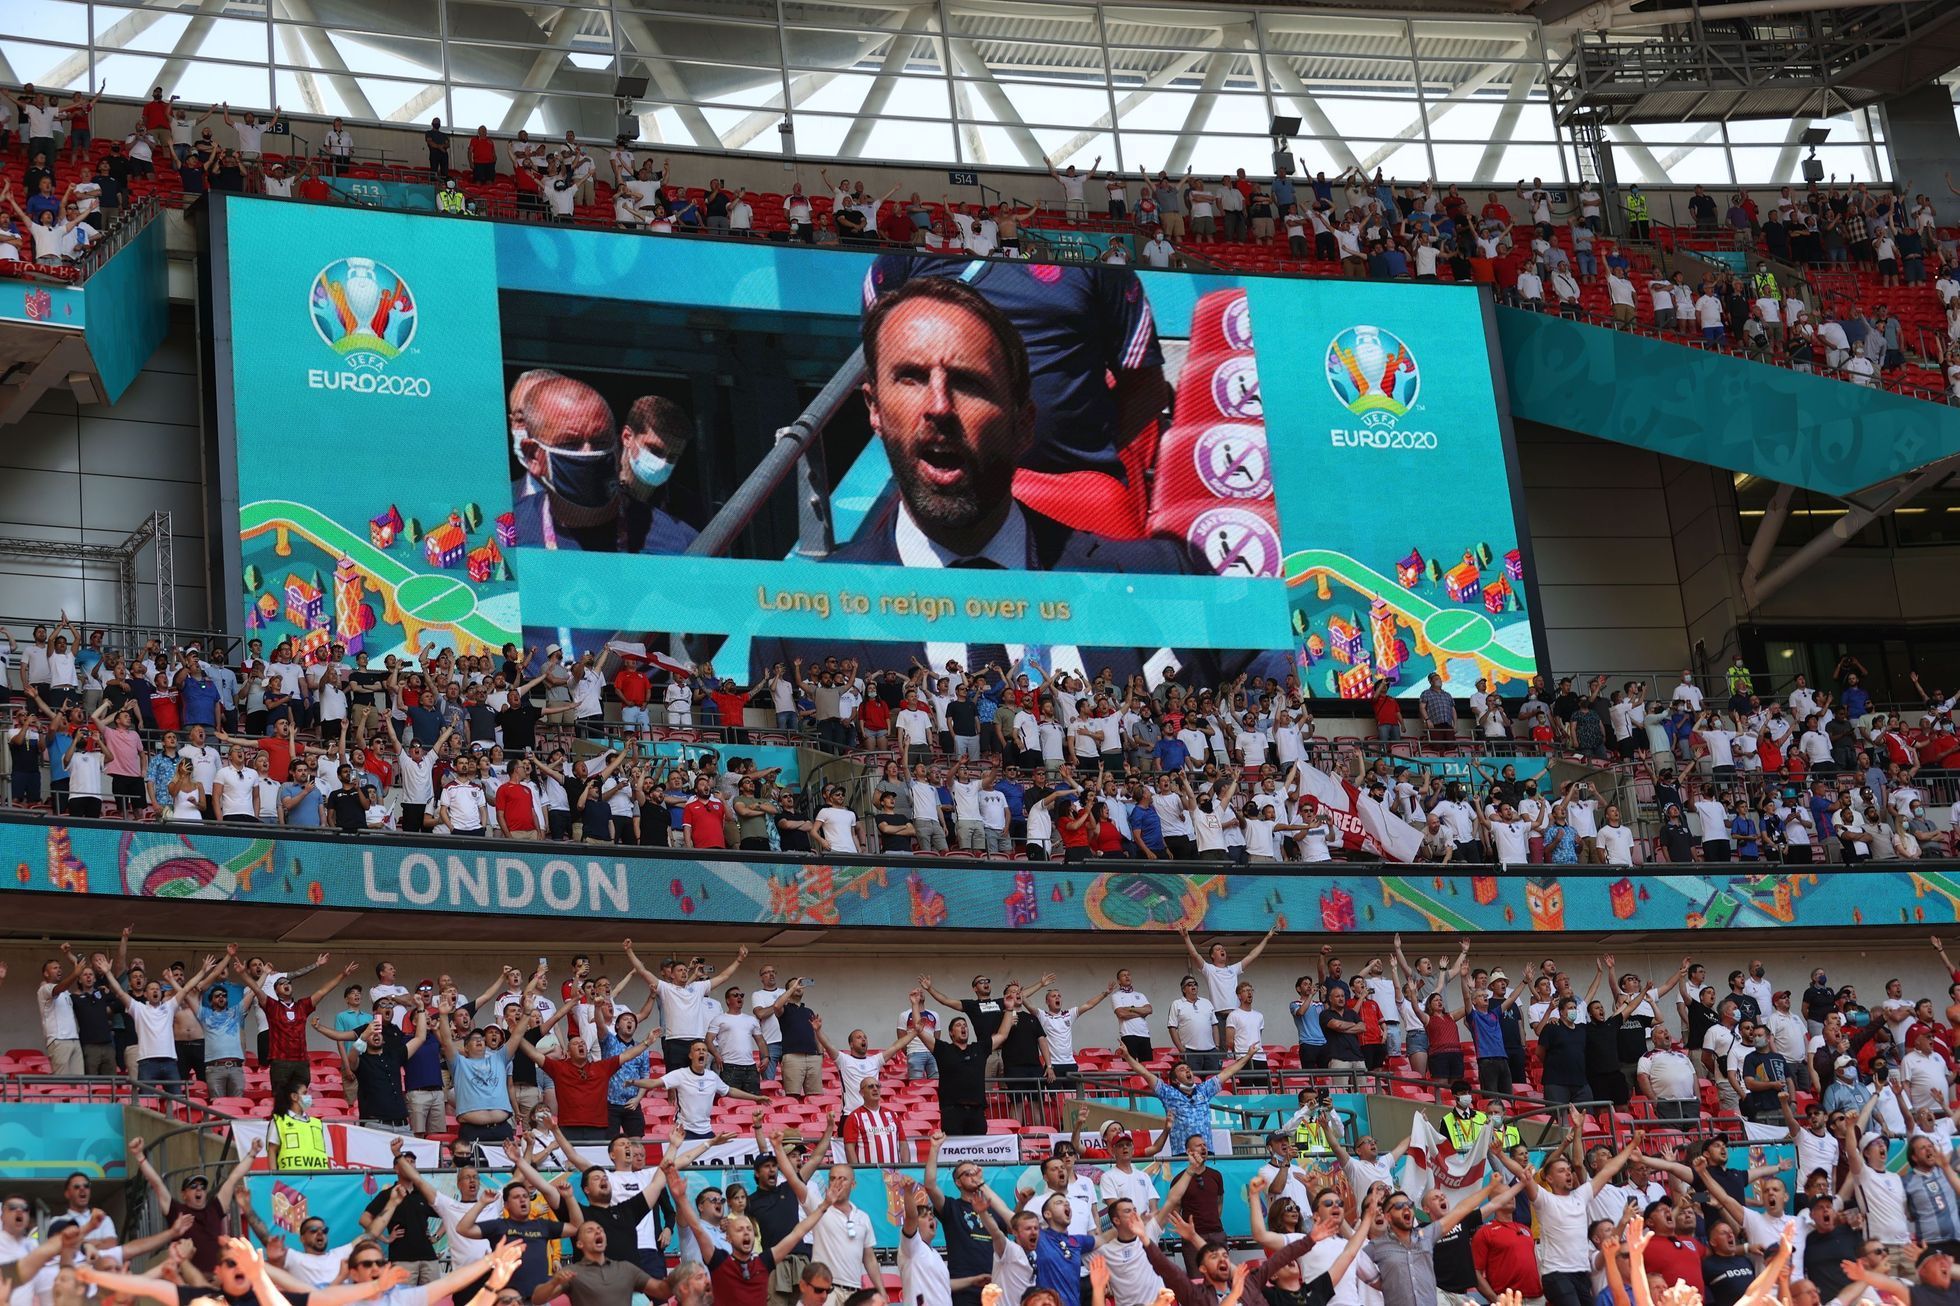 Hlediště ve Wembley během zápasu Anglie - Chorvatsko na ME 2020